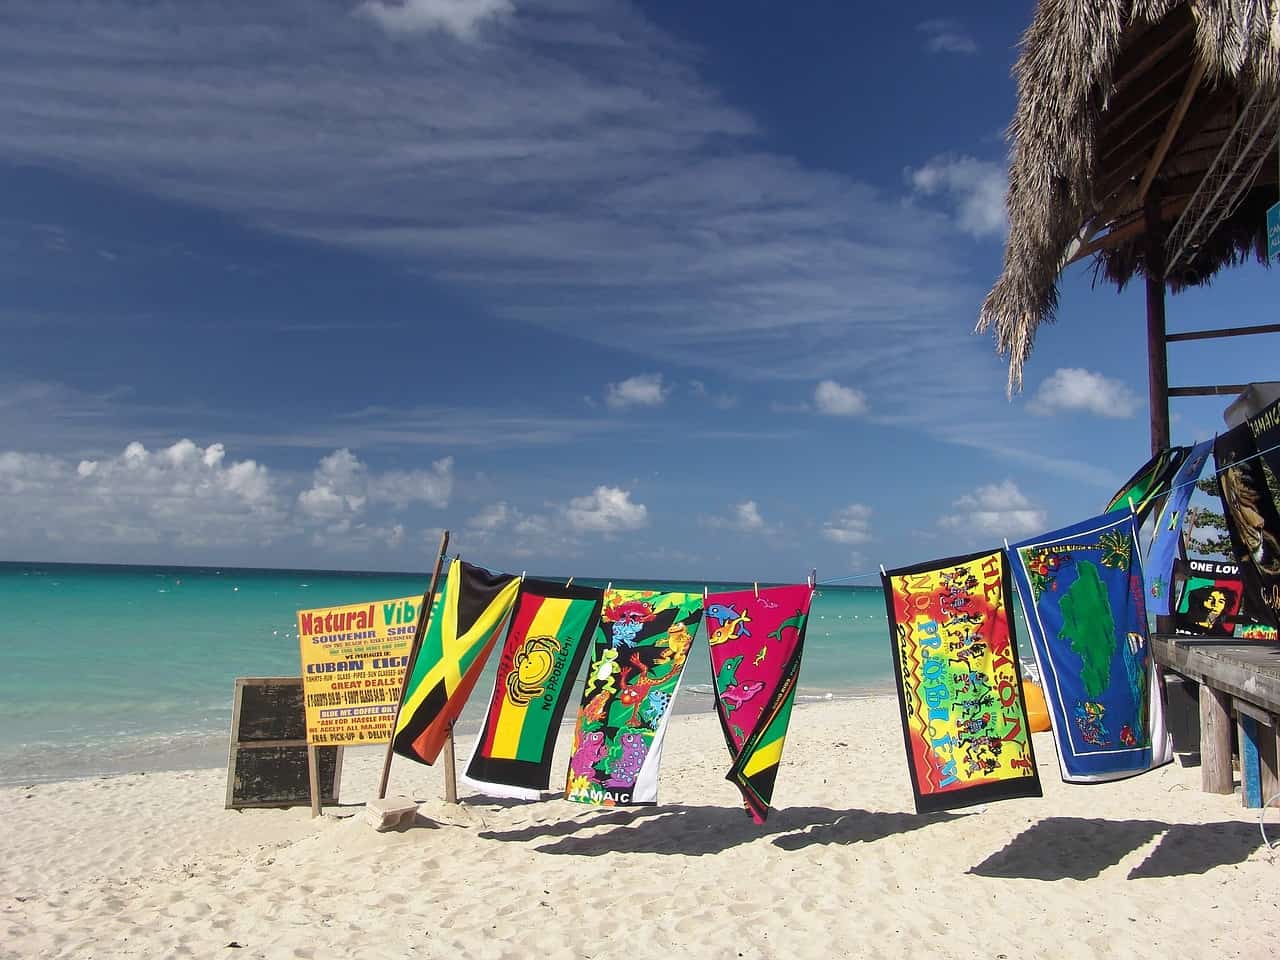 Jamajka – niesamowite przygody i rajskie plaże